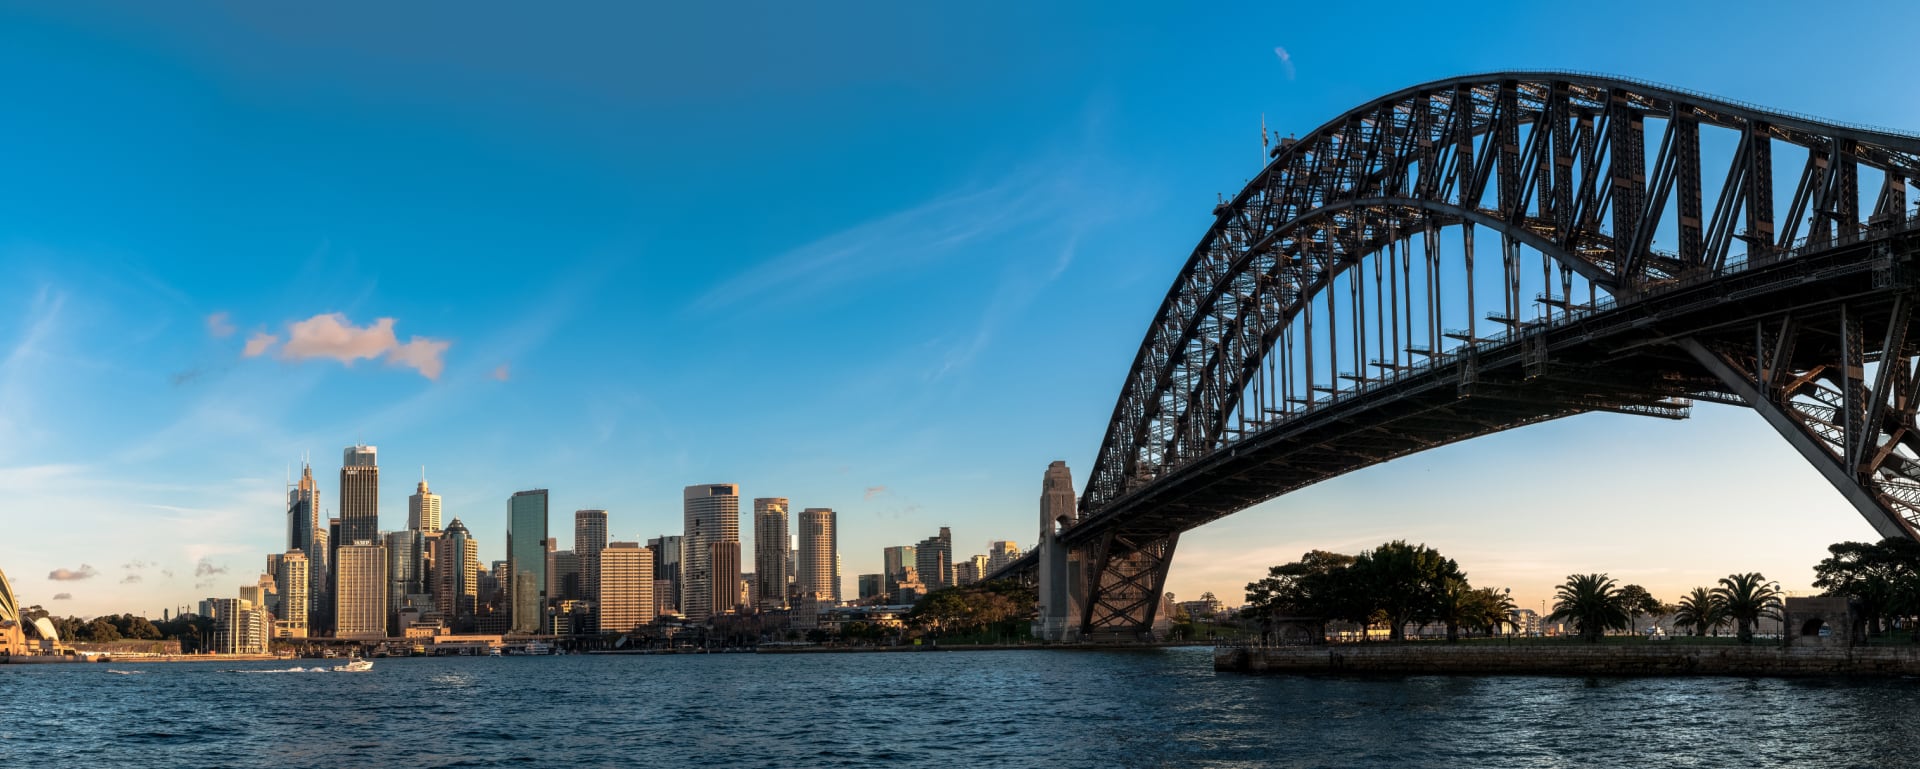 Panoramic shot of Sydney harbour-bridge